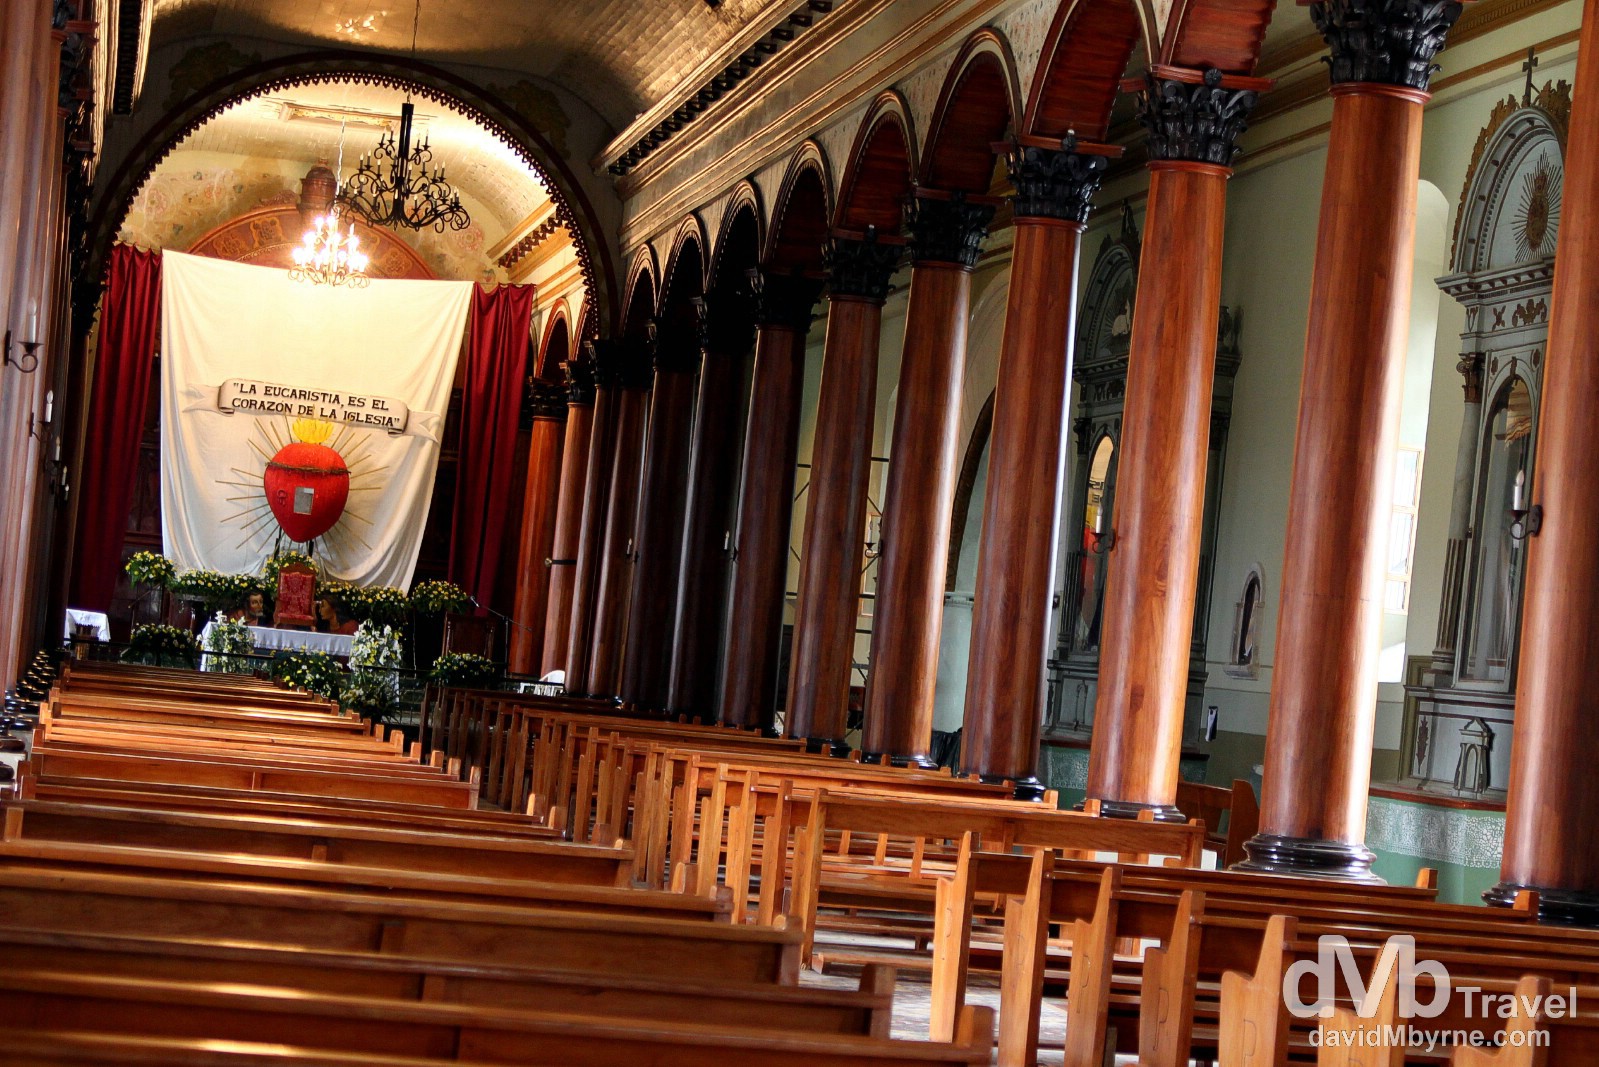 Iglesia Santa Lucia in Suchitoto, El Salvador. June 4th 2013.